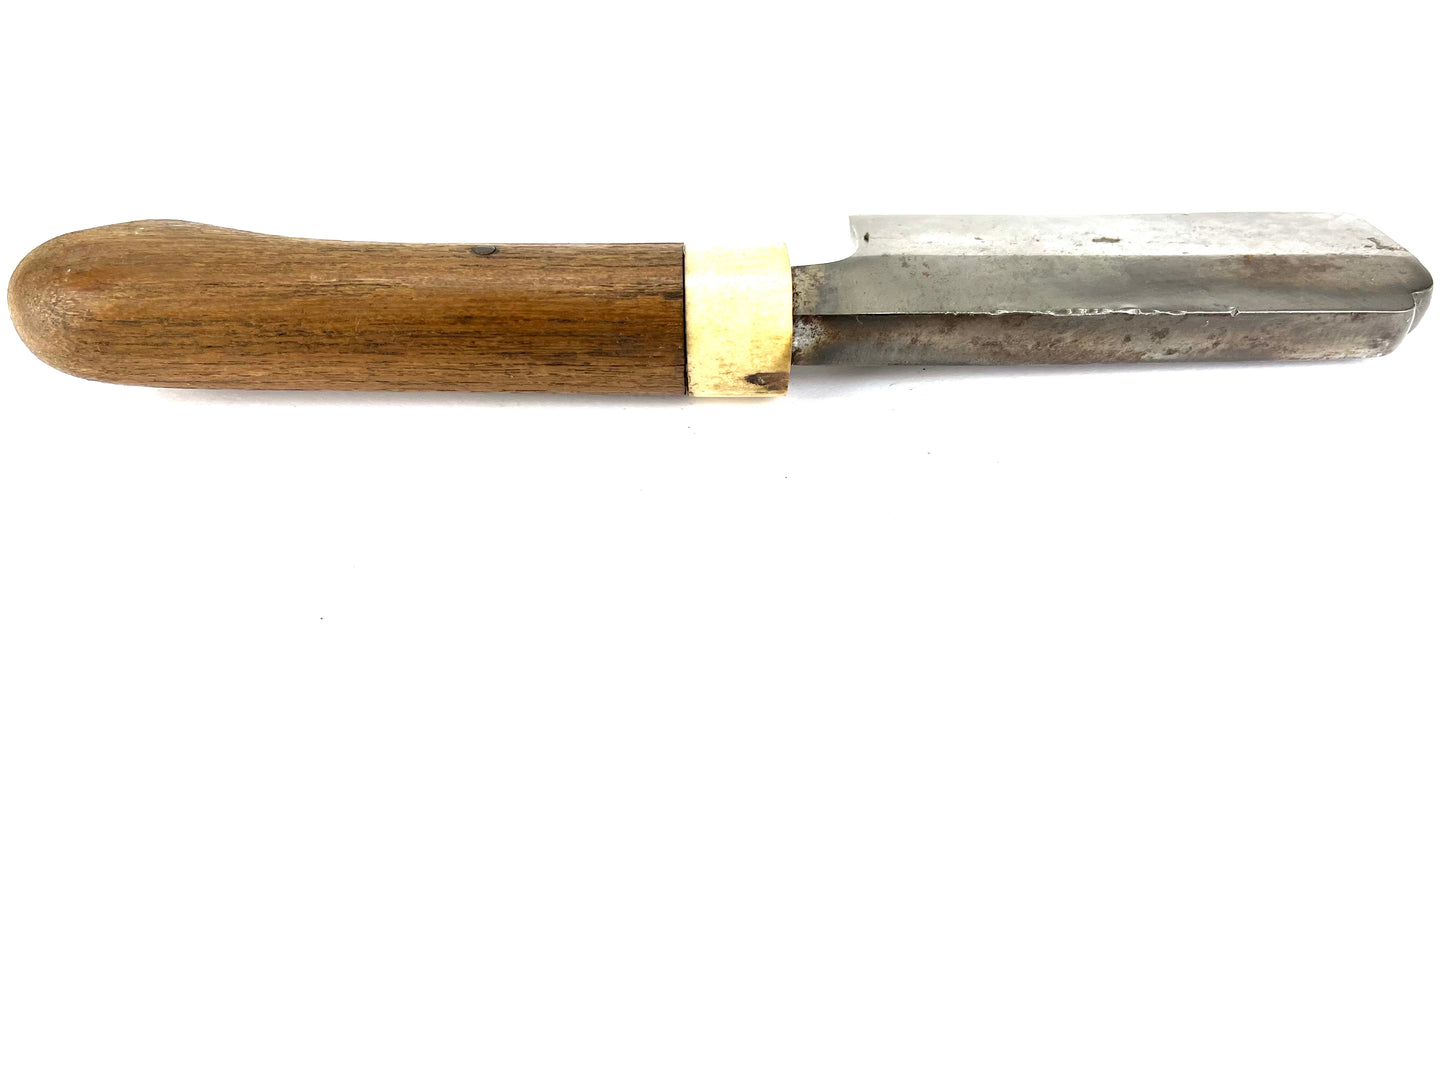 Vintage Japanese Small Hatchet bamboo splitting knife 4.5”